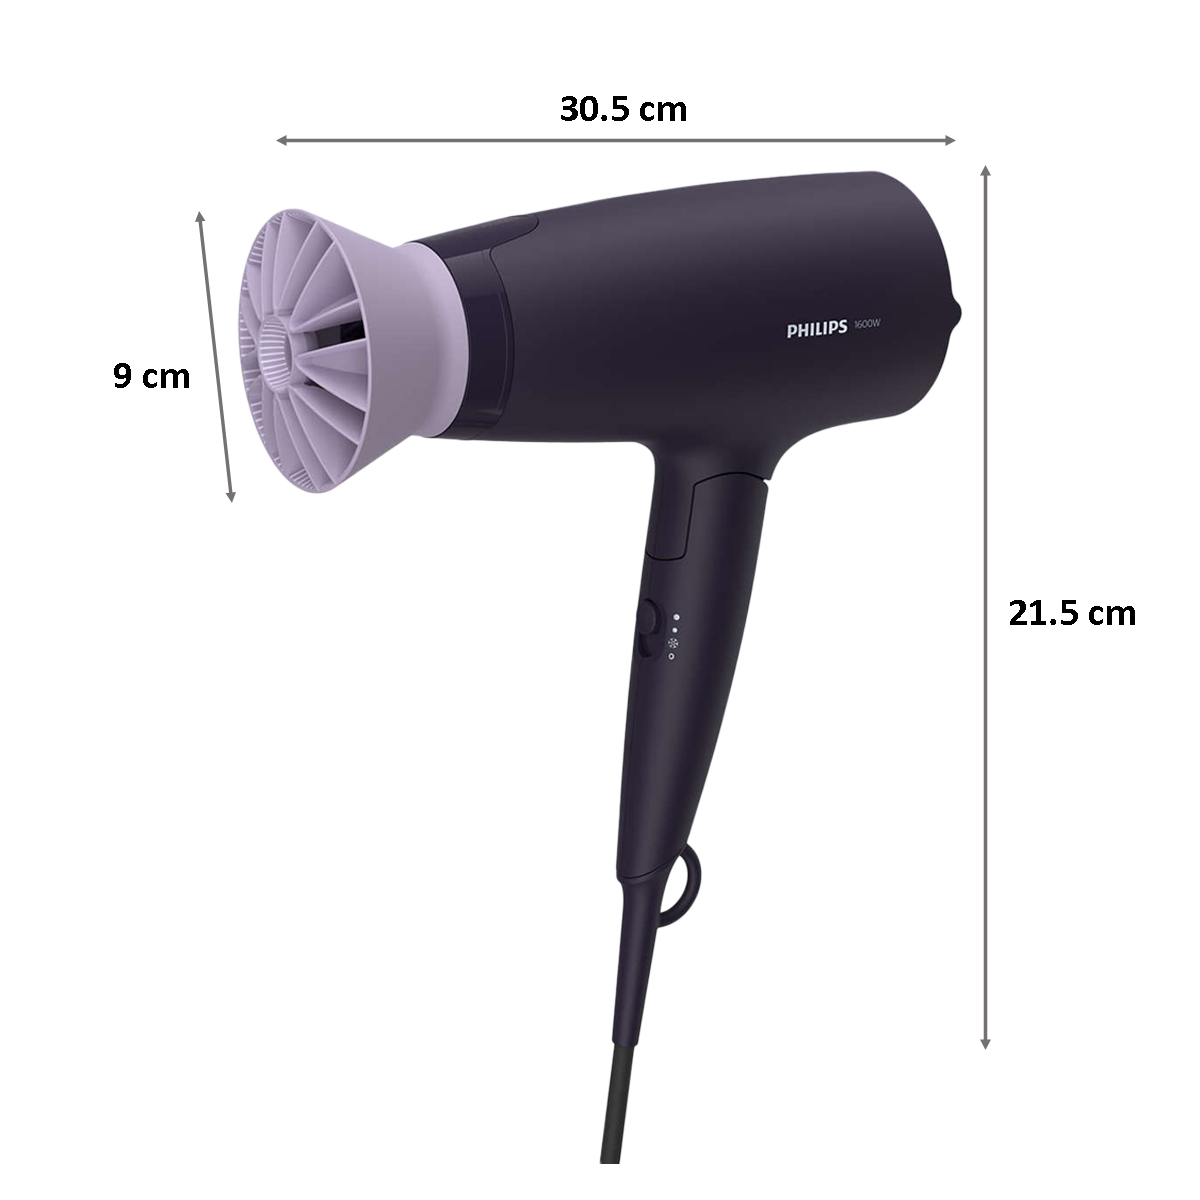 Buy Rocklight HD6006 Hair Dryer 1800 W Jointlookcomshop